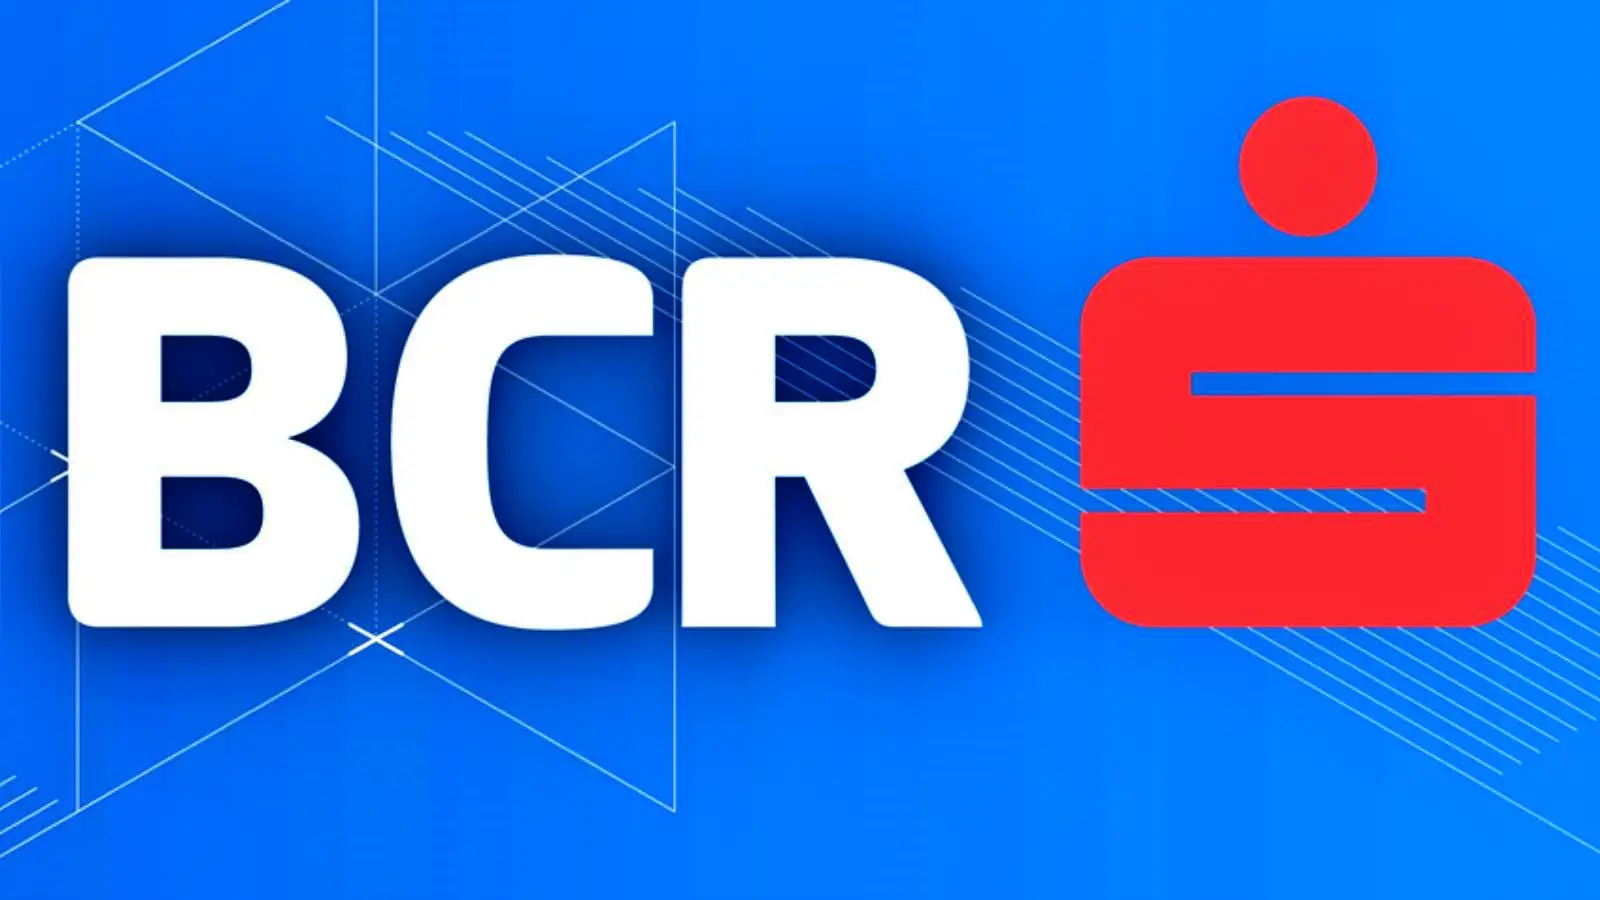 BCR Romanian päätös ilmoitti asiakkaille tehdyistä muutoksista